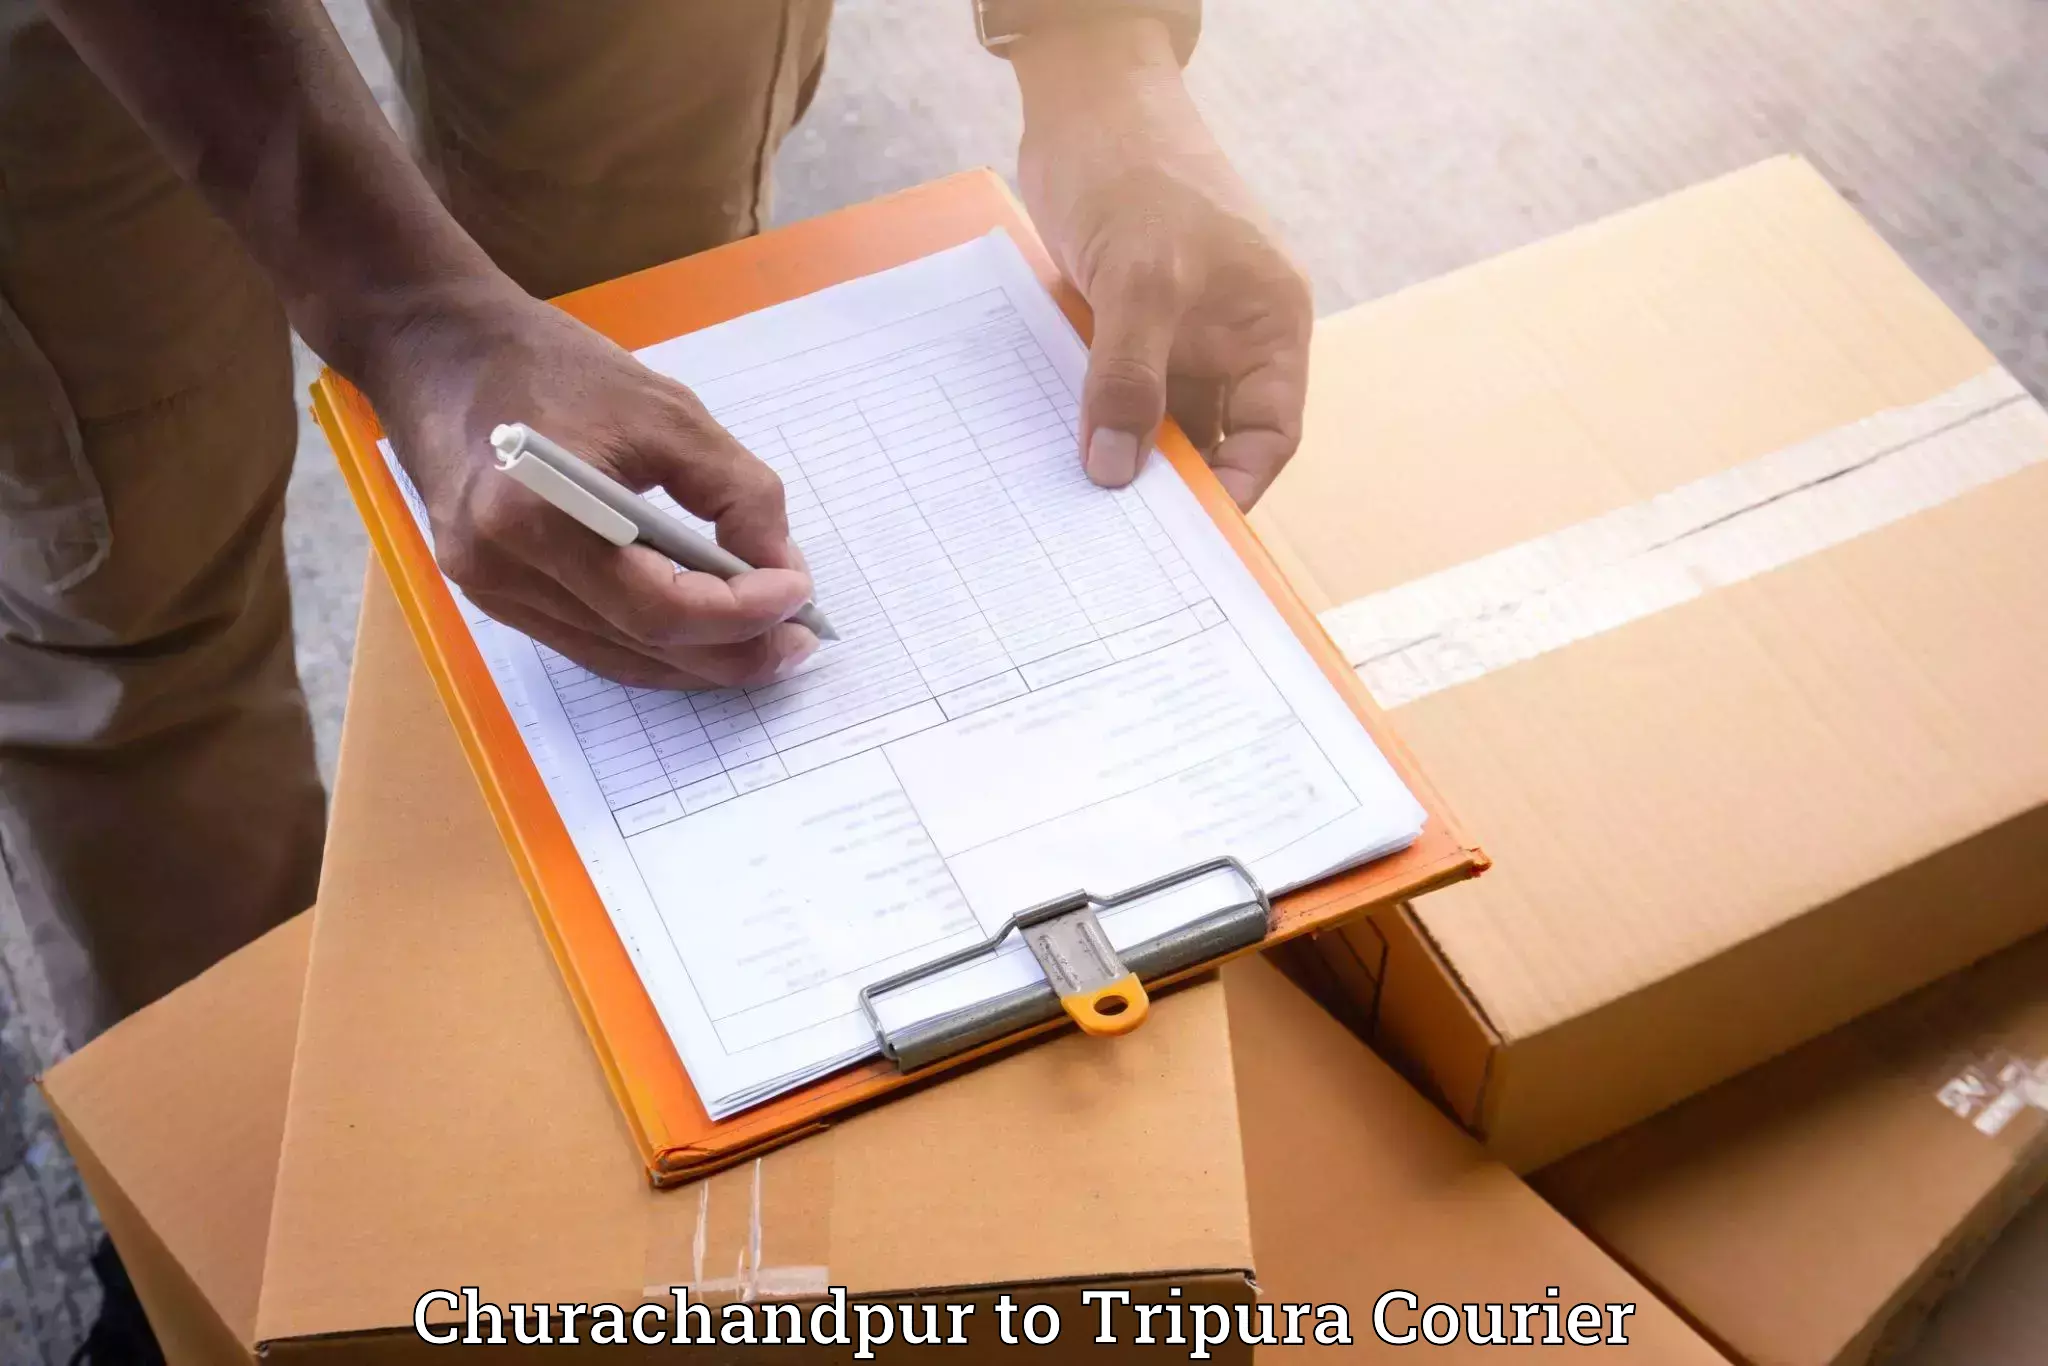 Furniture moving services Churachandpur to Dharmanagar